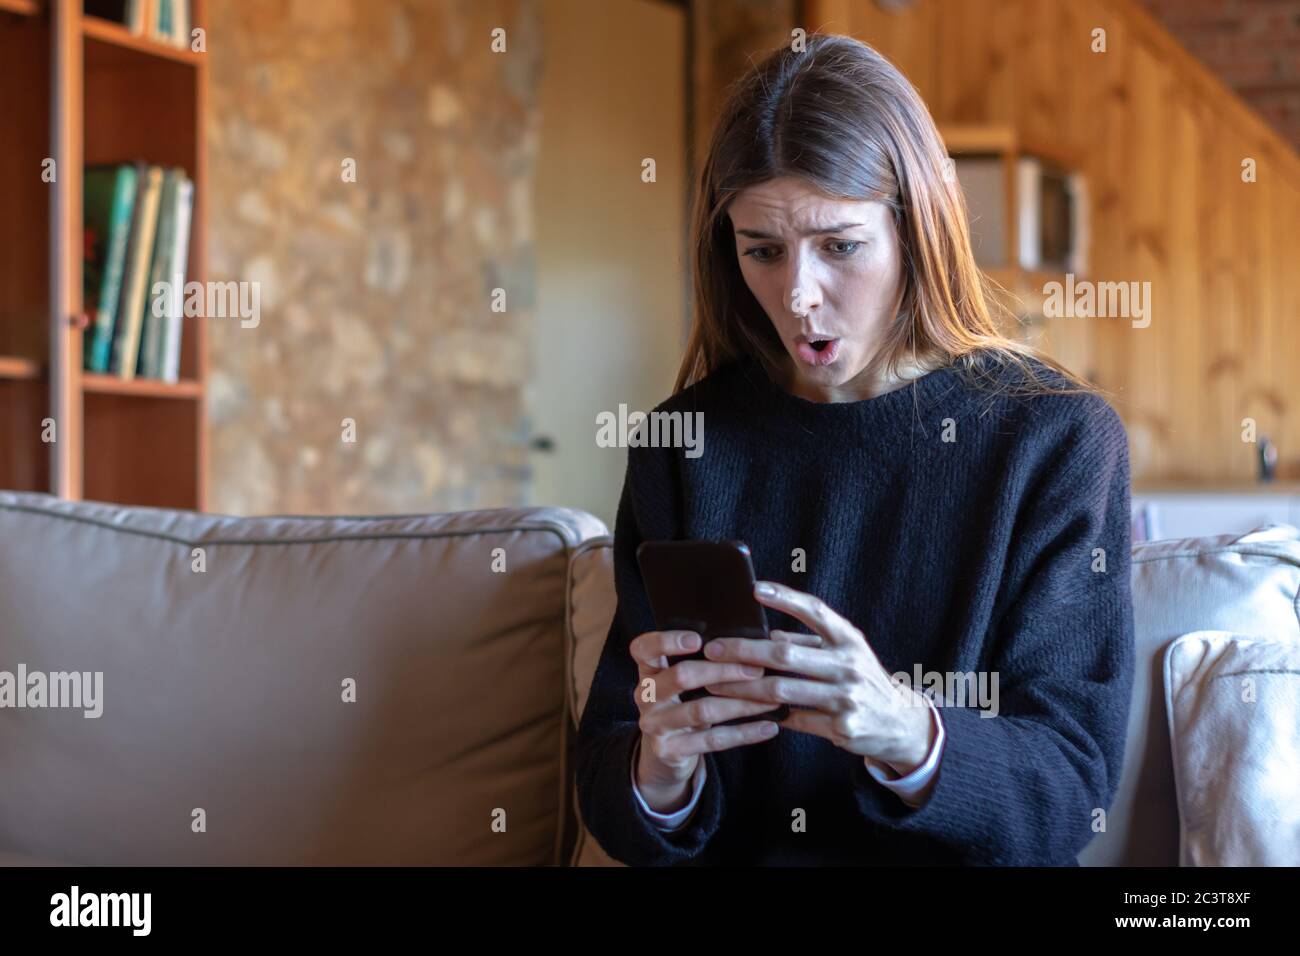 Une jeune femme brune choquée tapant sur le smartphone assis sur le canapé à la maison, portant un chandail noir Banque D'Images